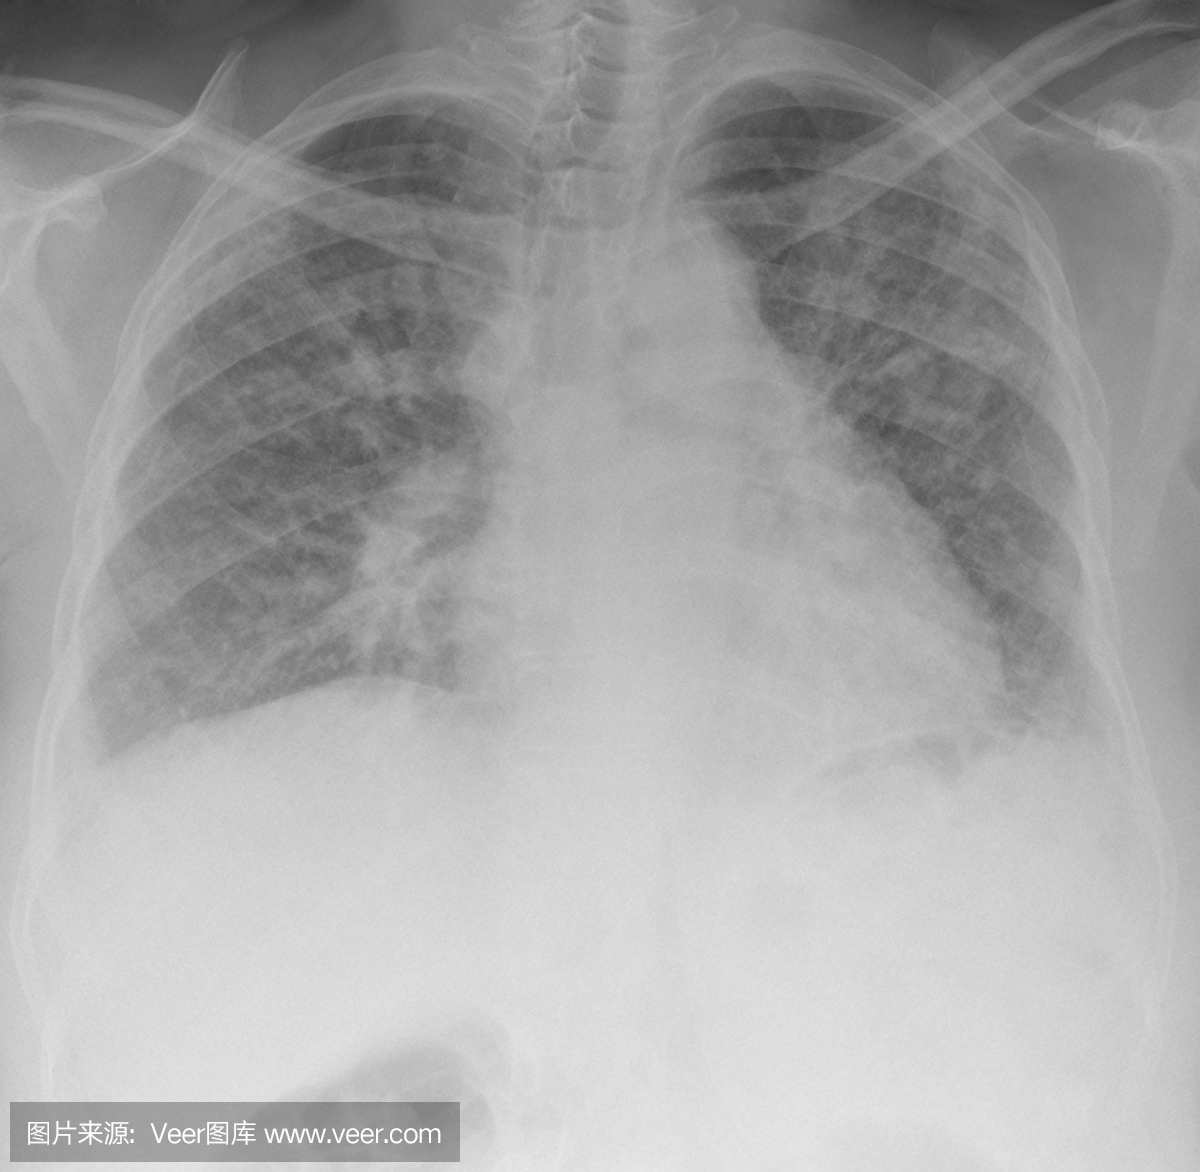 数字胸片严重肺纤维化